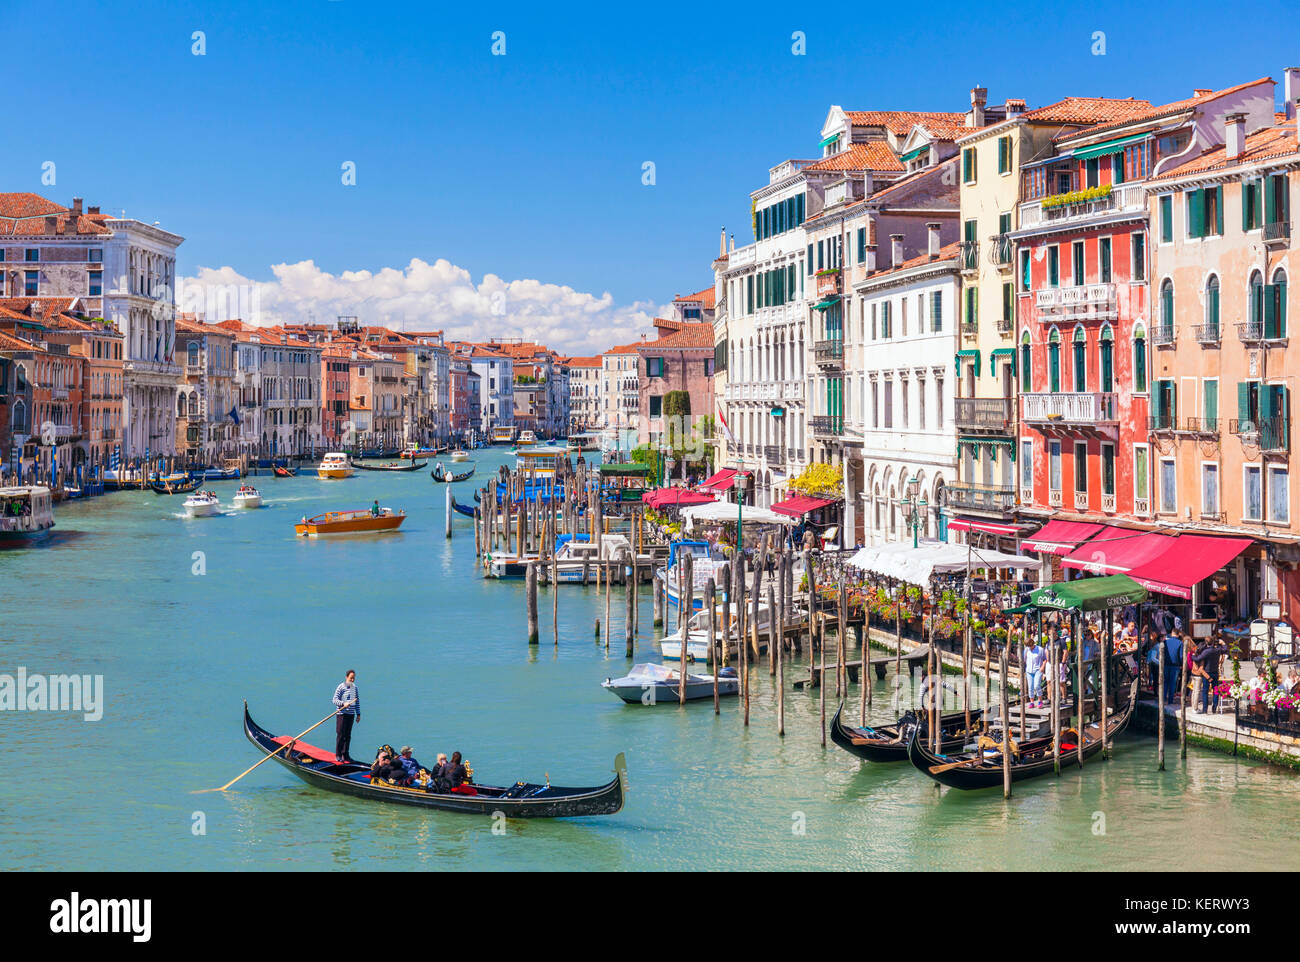 Venedig Italien Venedig Gondoliere Rudern eine Gondel voll von Touristen auf eine Gondelfahrt auf dem Canal Grande Venedig Italien eu Europa Stockfoto